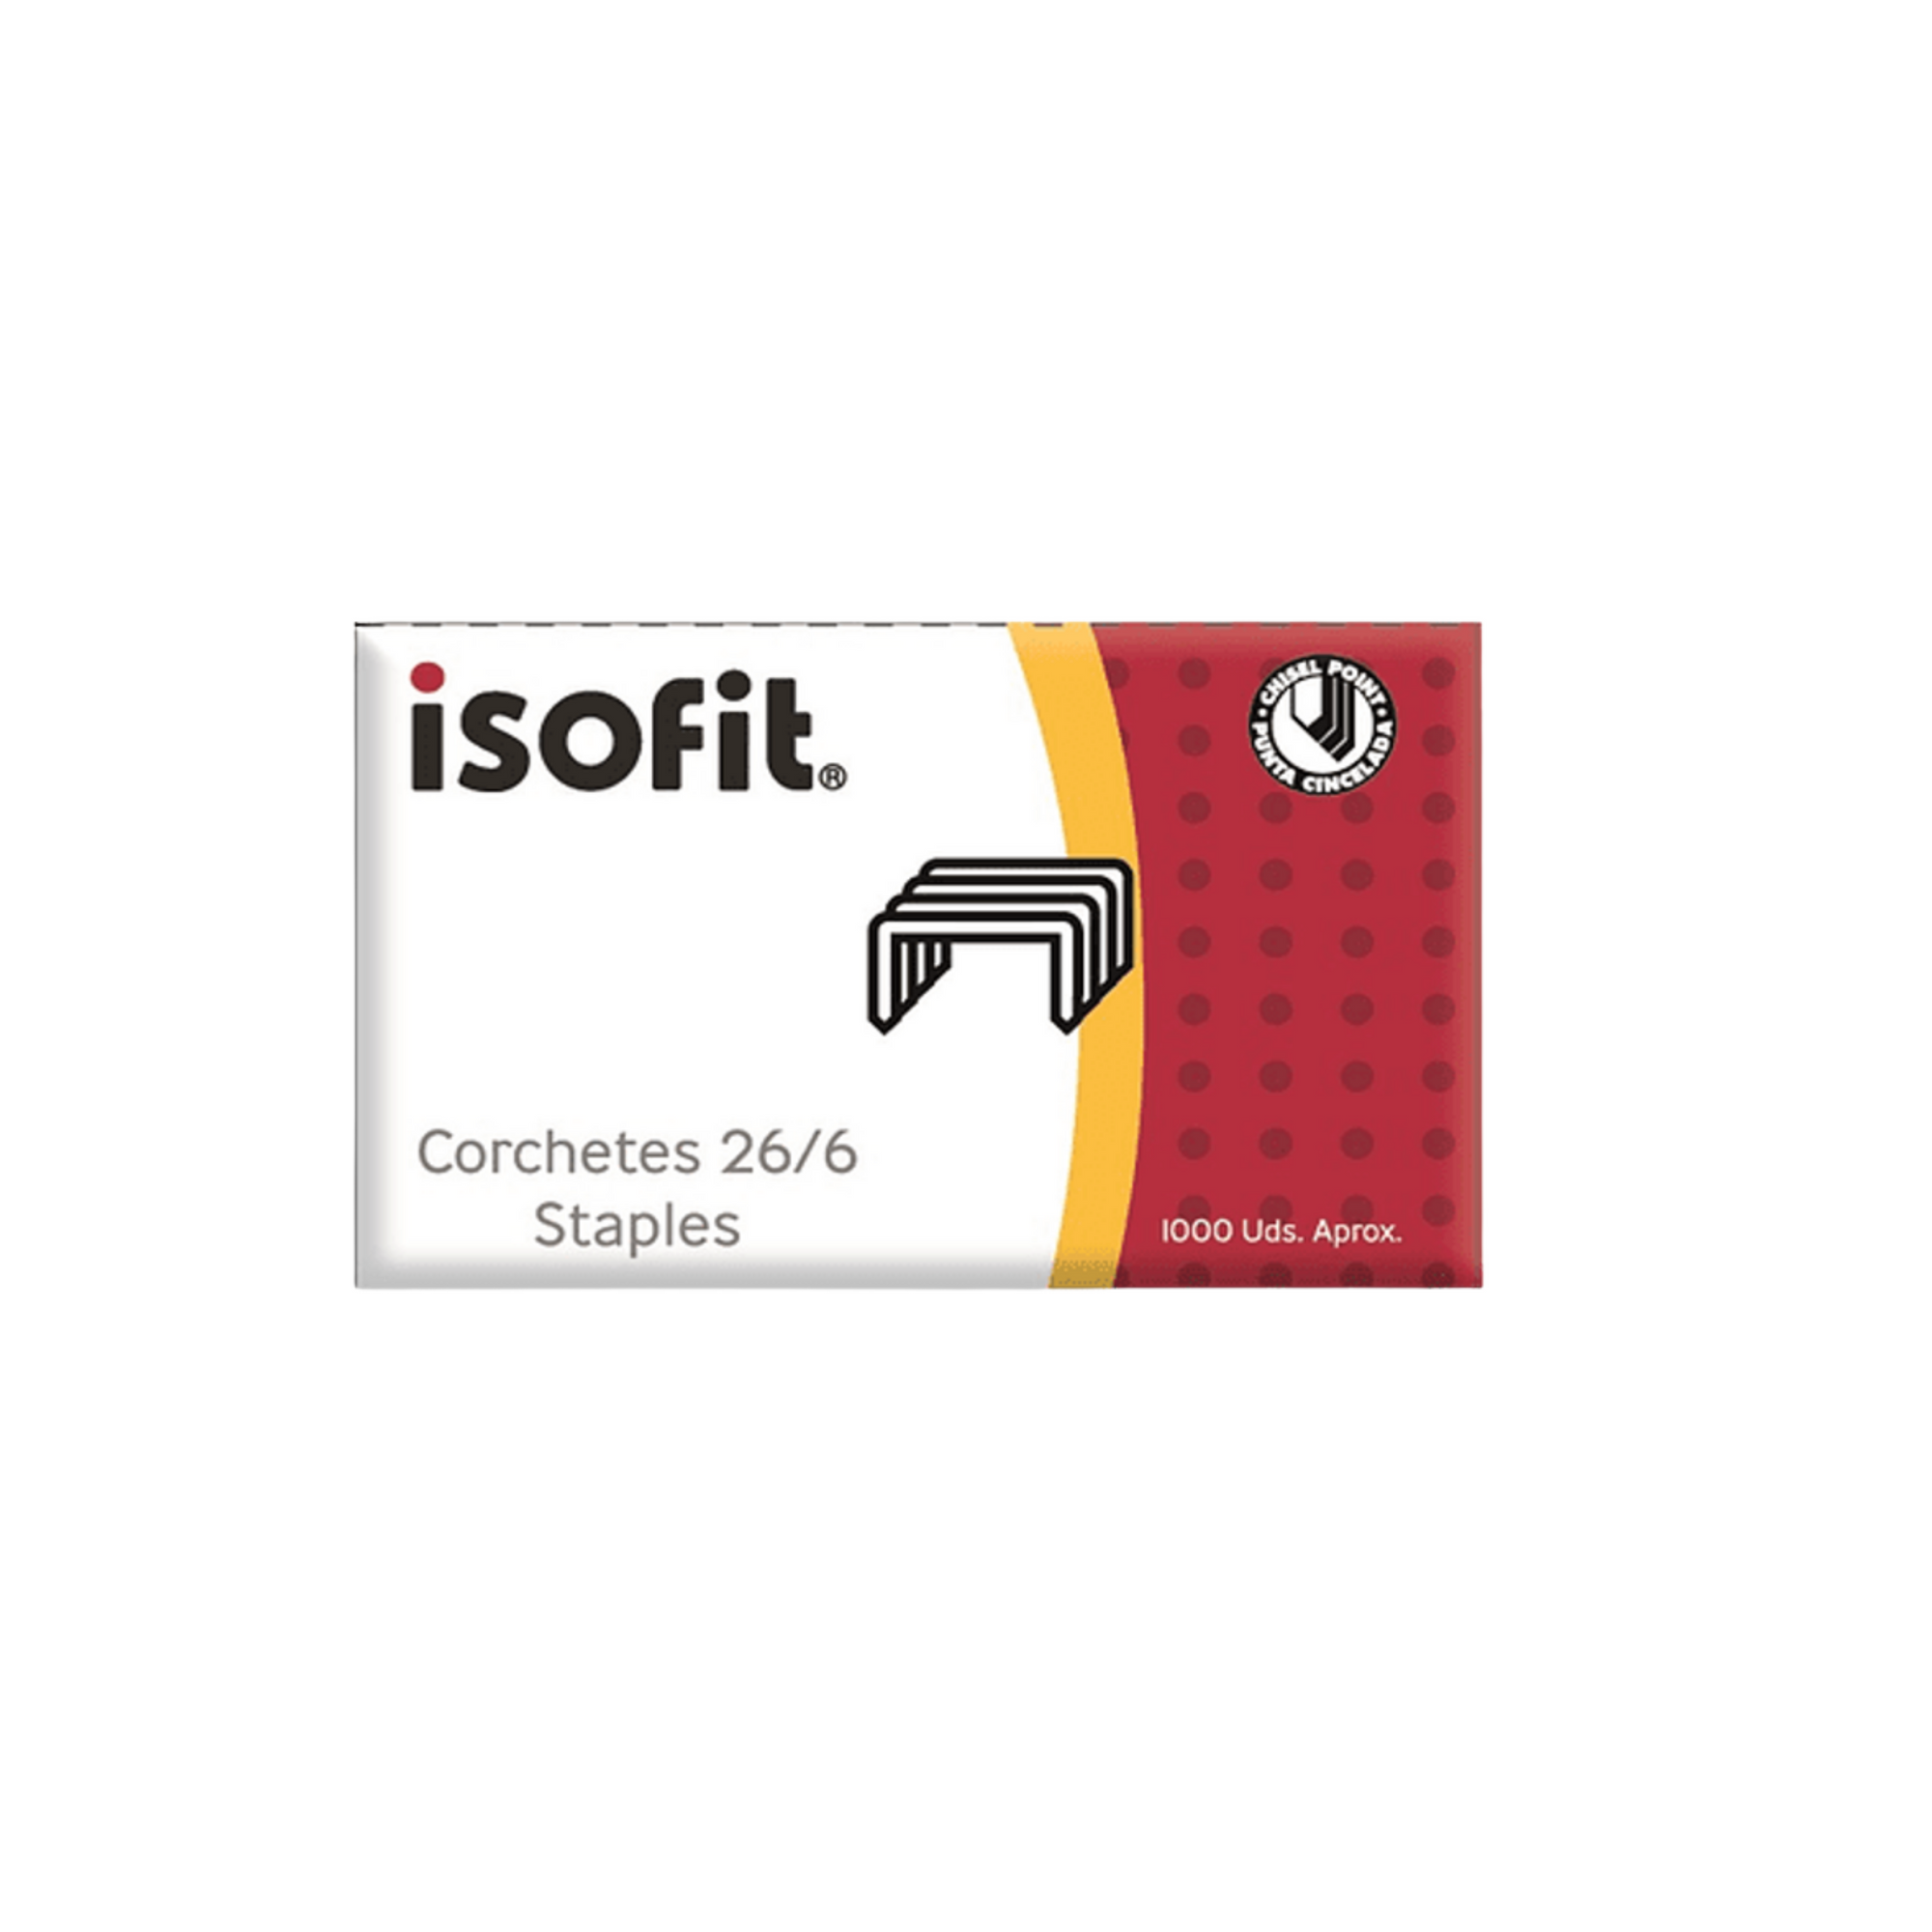 Corchetes isofit 26/6 caja de 1000